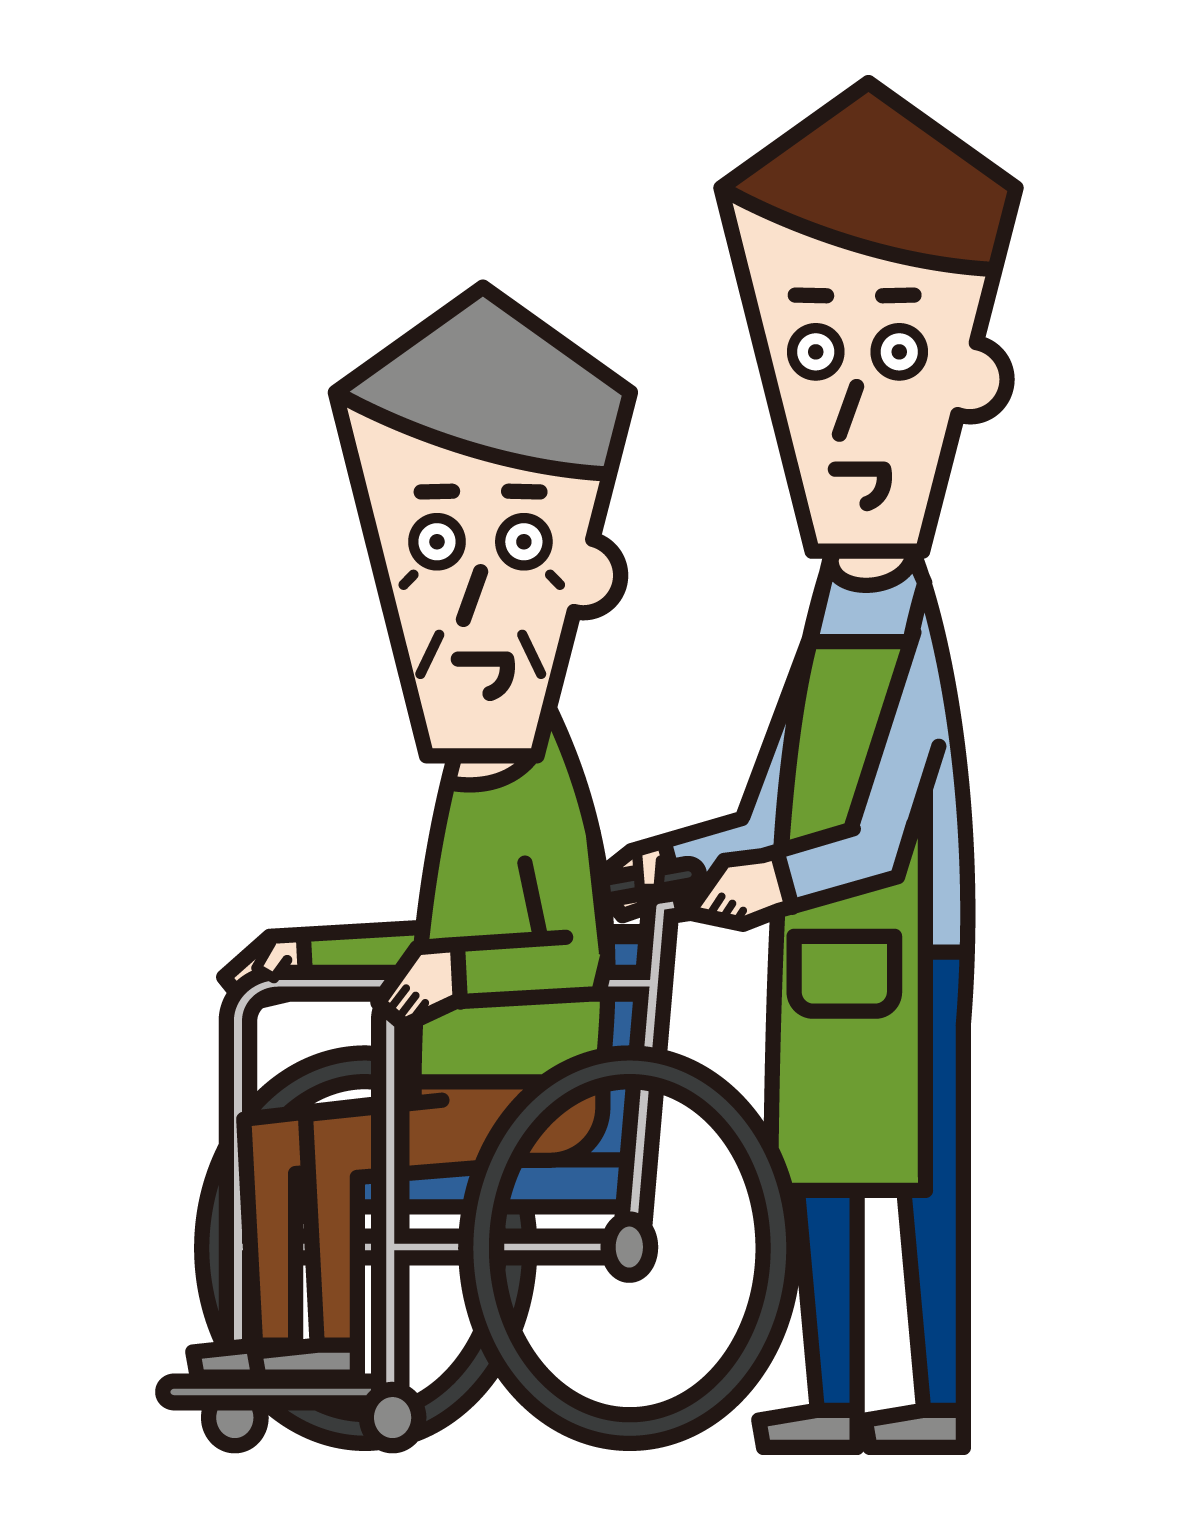 坐在輪椅上的人（祖父）和來訪的護理人員（男性）的插圖